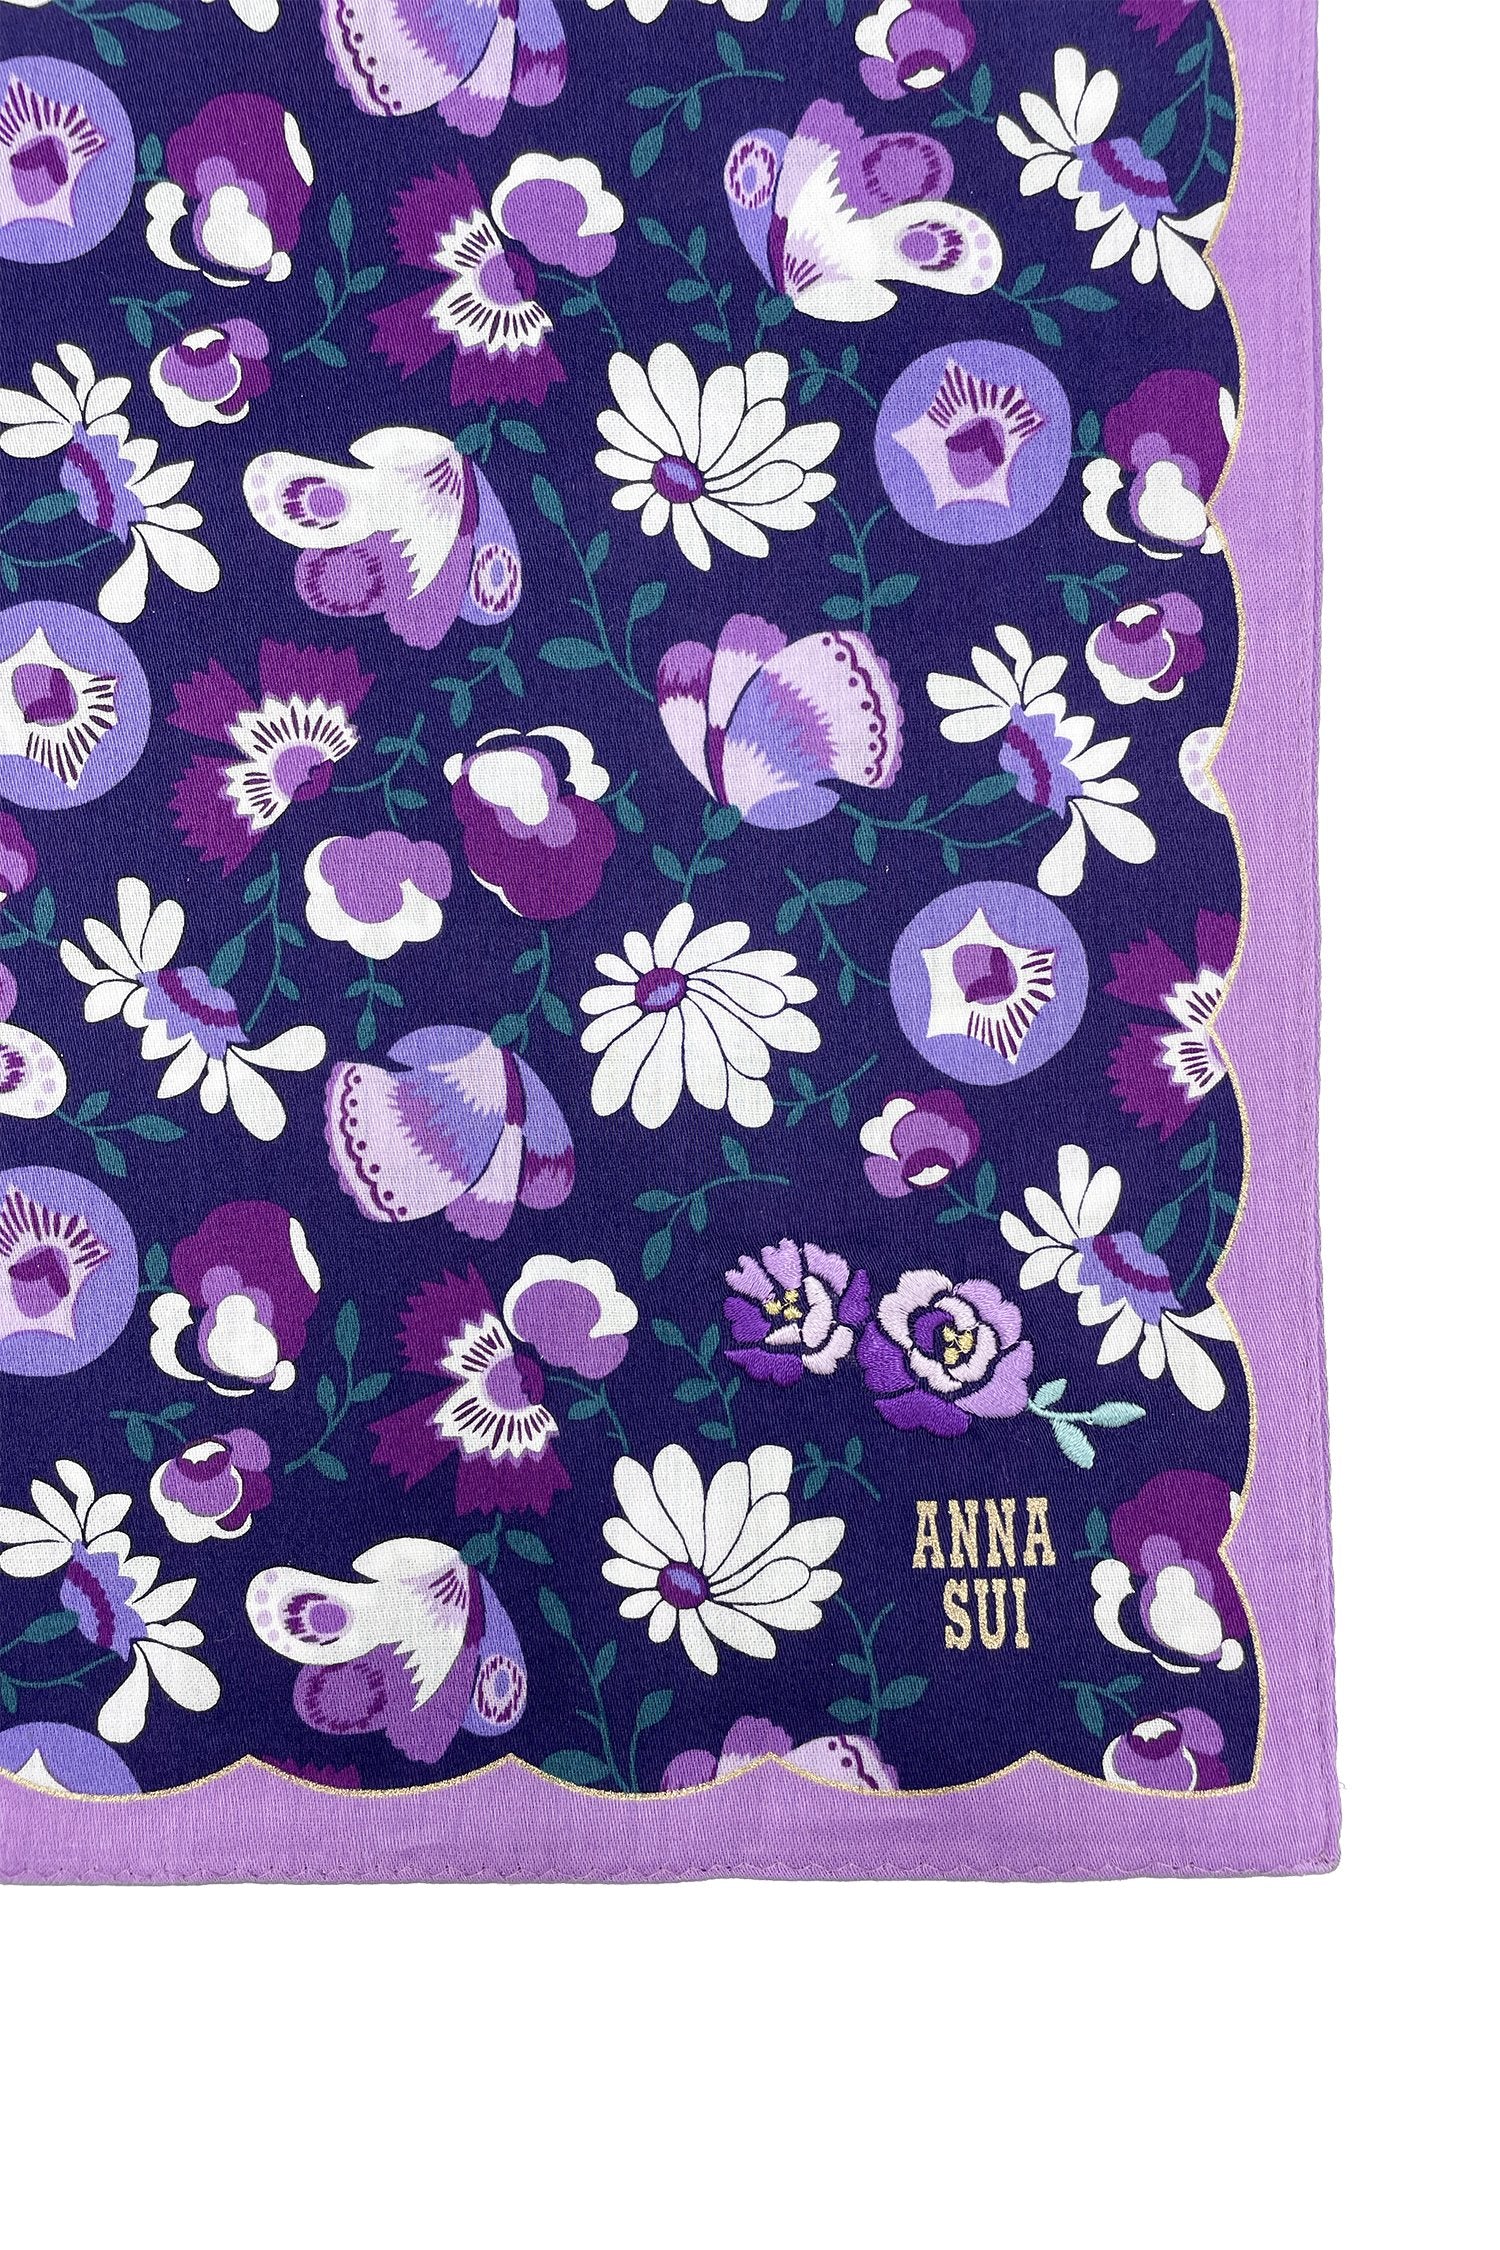 Handkerchief with white/purple daisy on dark blue, wavy purple hems, golden Anna’s label in corner